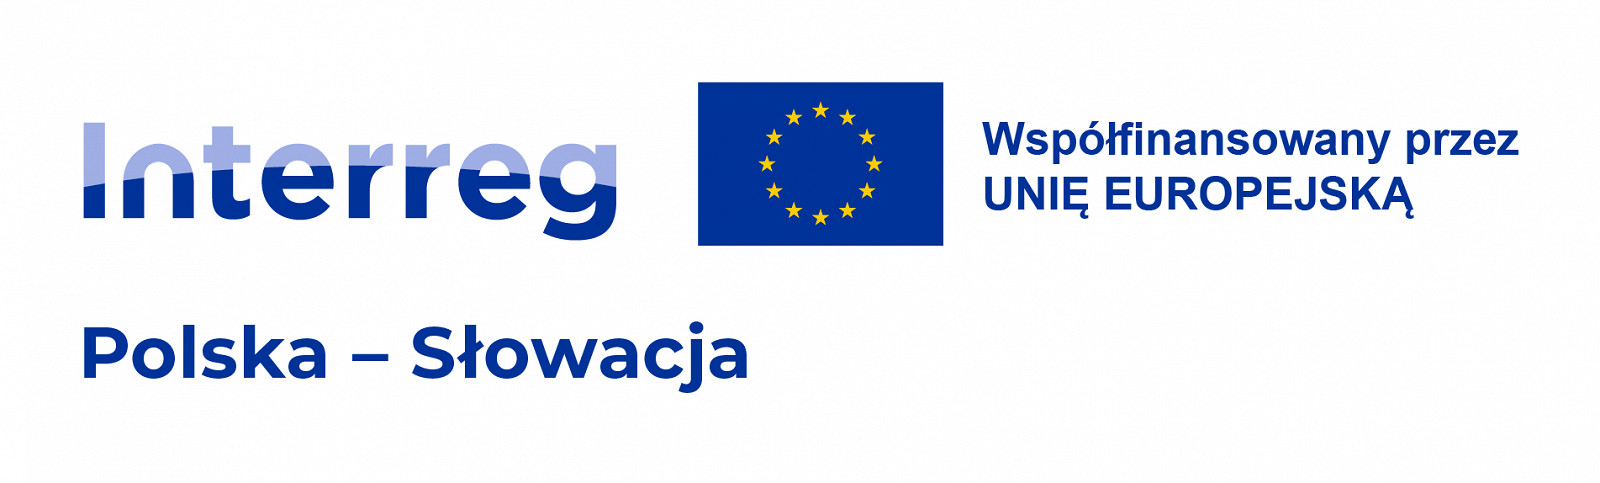 Logo Polska - Slovensko (Polska) RGB Color-02.jpg [239.92 KB]